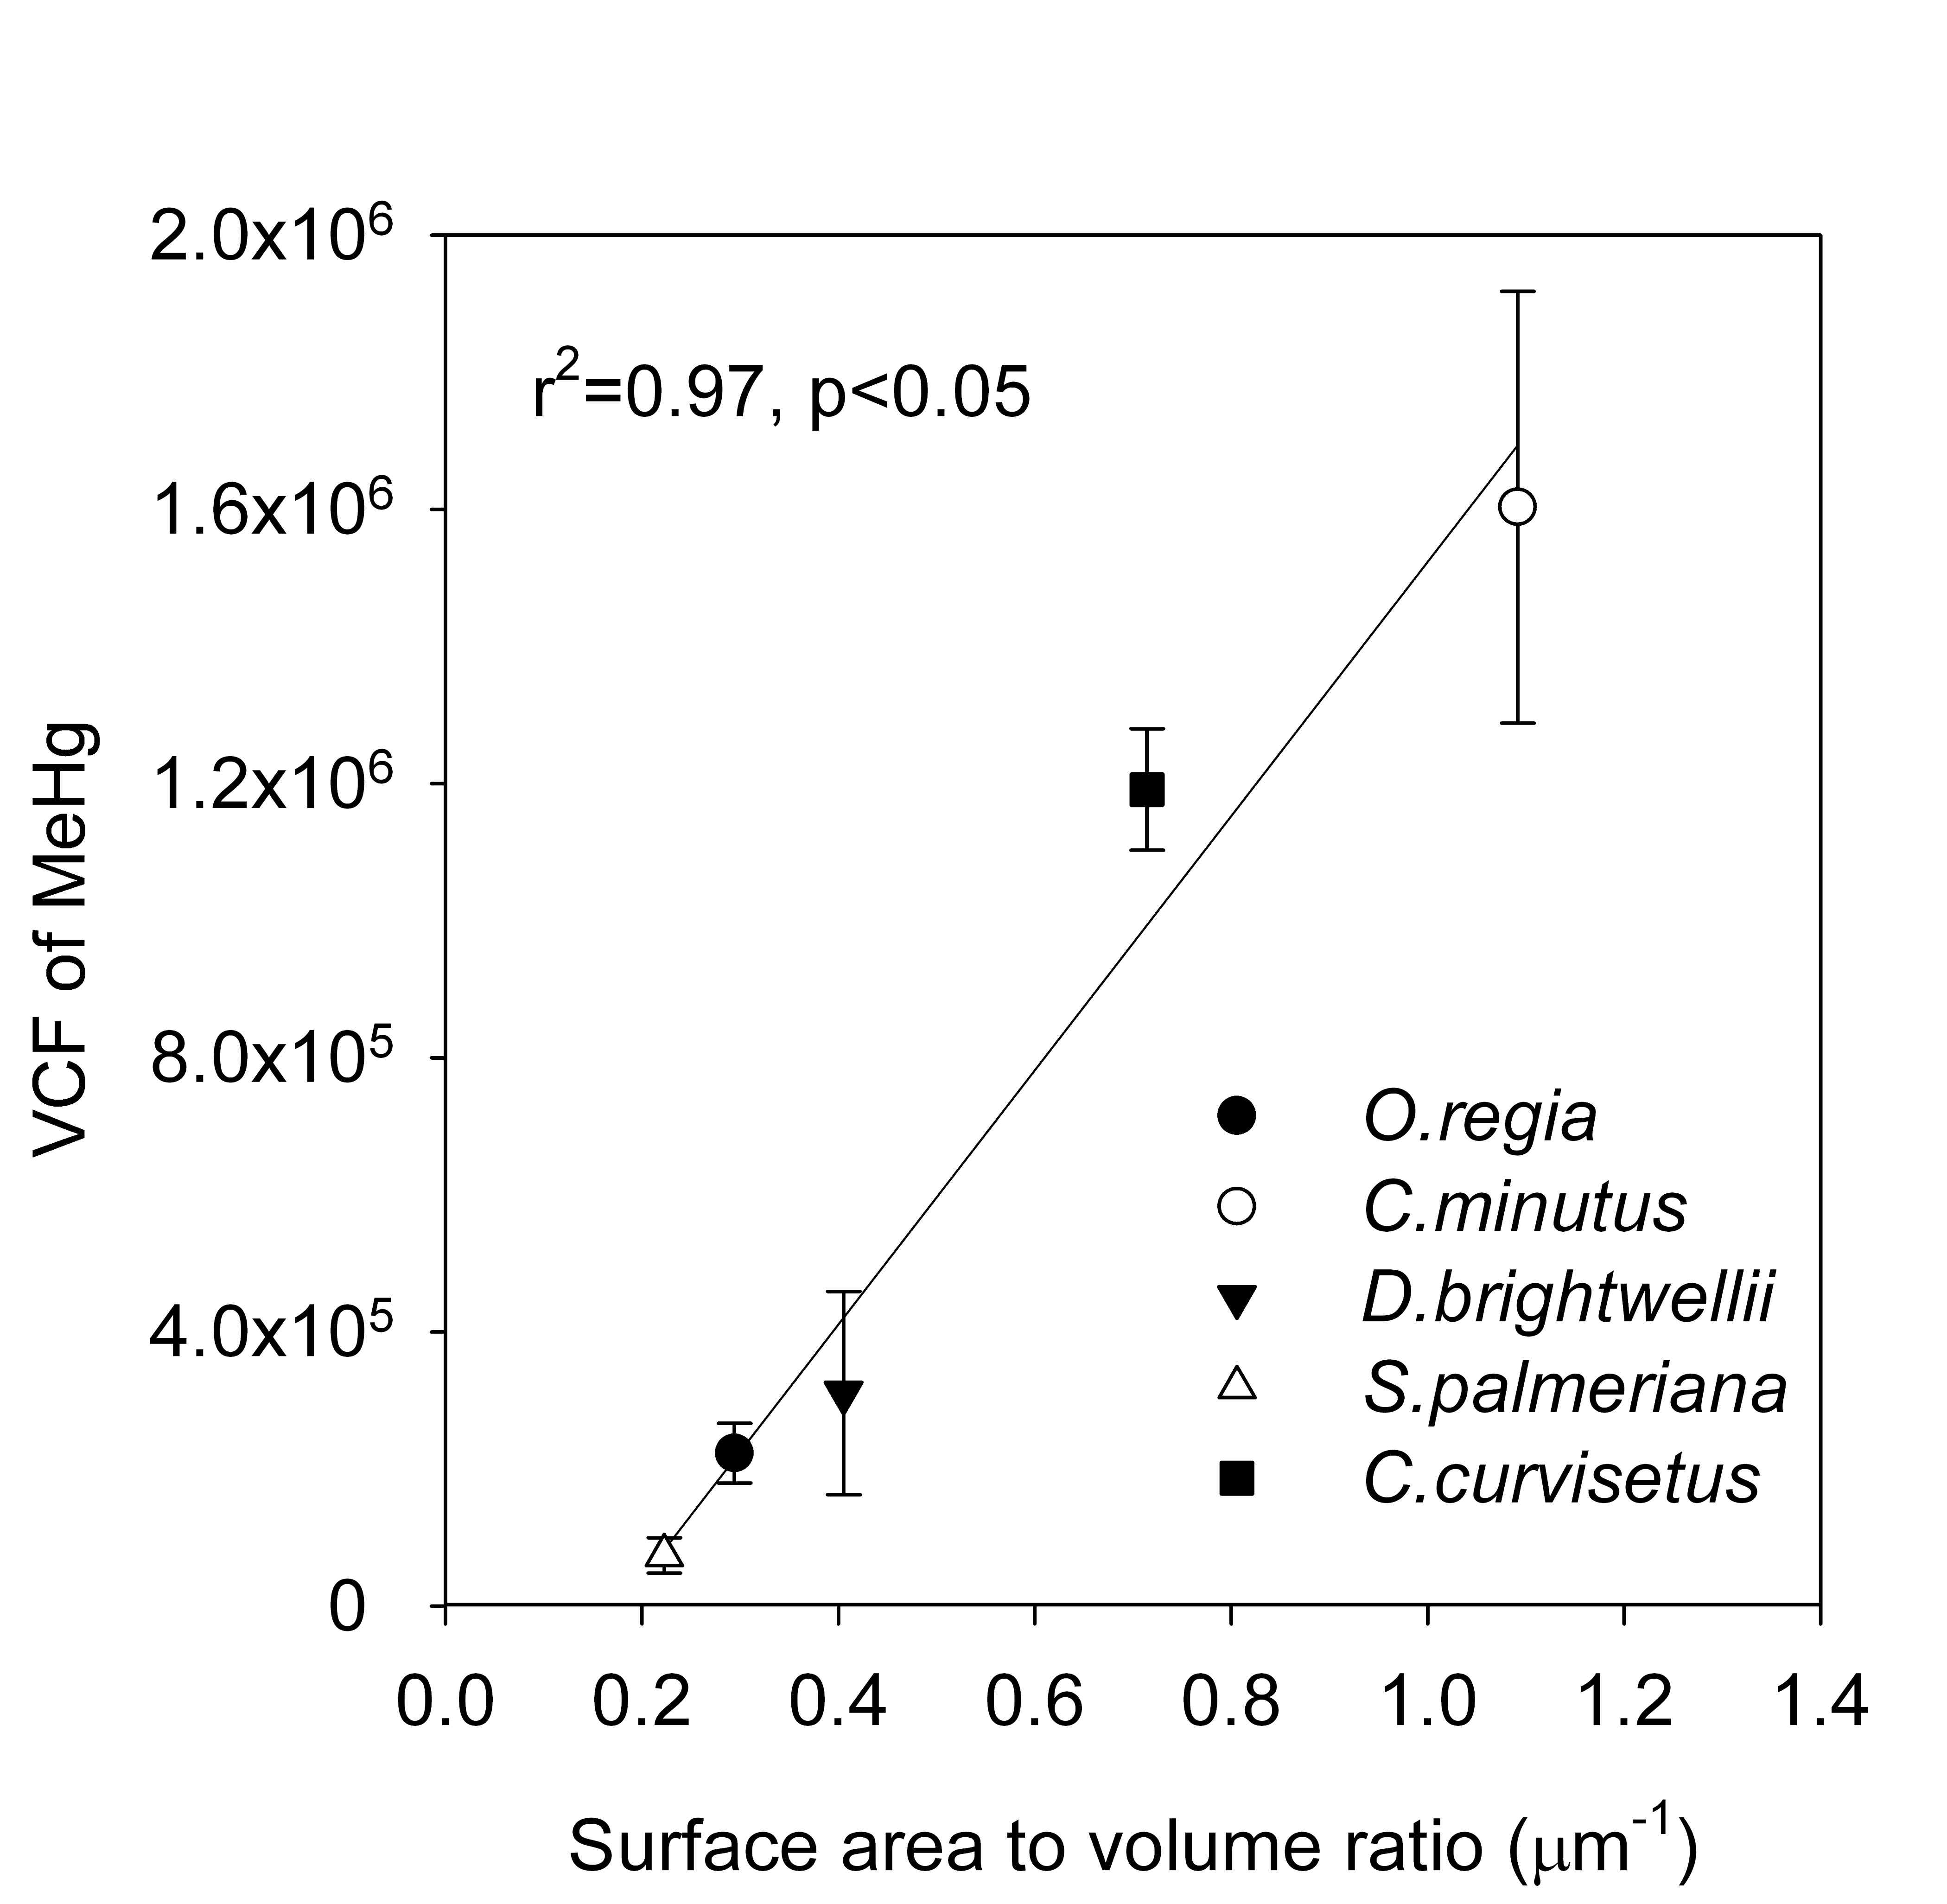 그림 3.3.4 O. regia, C. minutus, D.brightwellii, S. palmeriana, C. curvisetus 내유기수은 (MeHg)의 volume concentration factors (VCFs)와 표면적/부피 (Surface area to volume ratio)의 상관관계. VCF는 MeHg의 농도가 각각 20, 50, 100 pmol L-1에서 얻은 결과로부터 계산